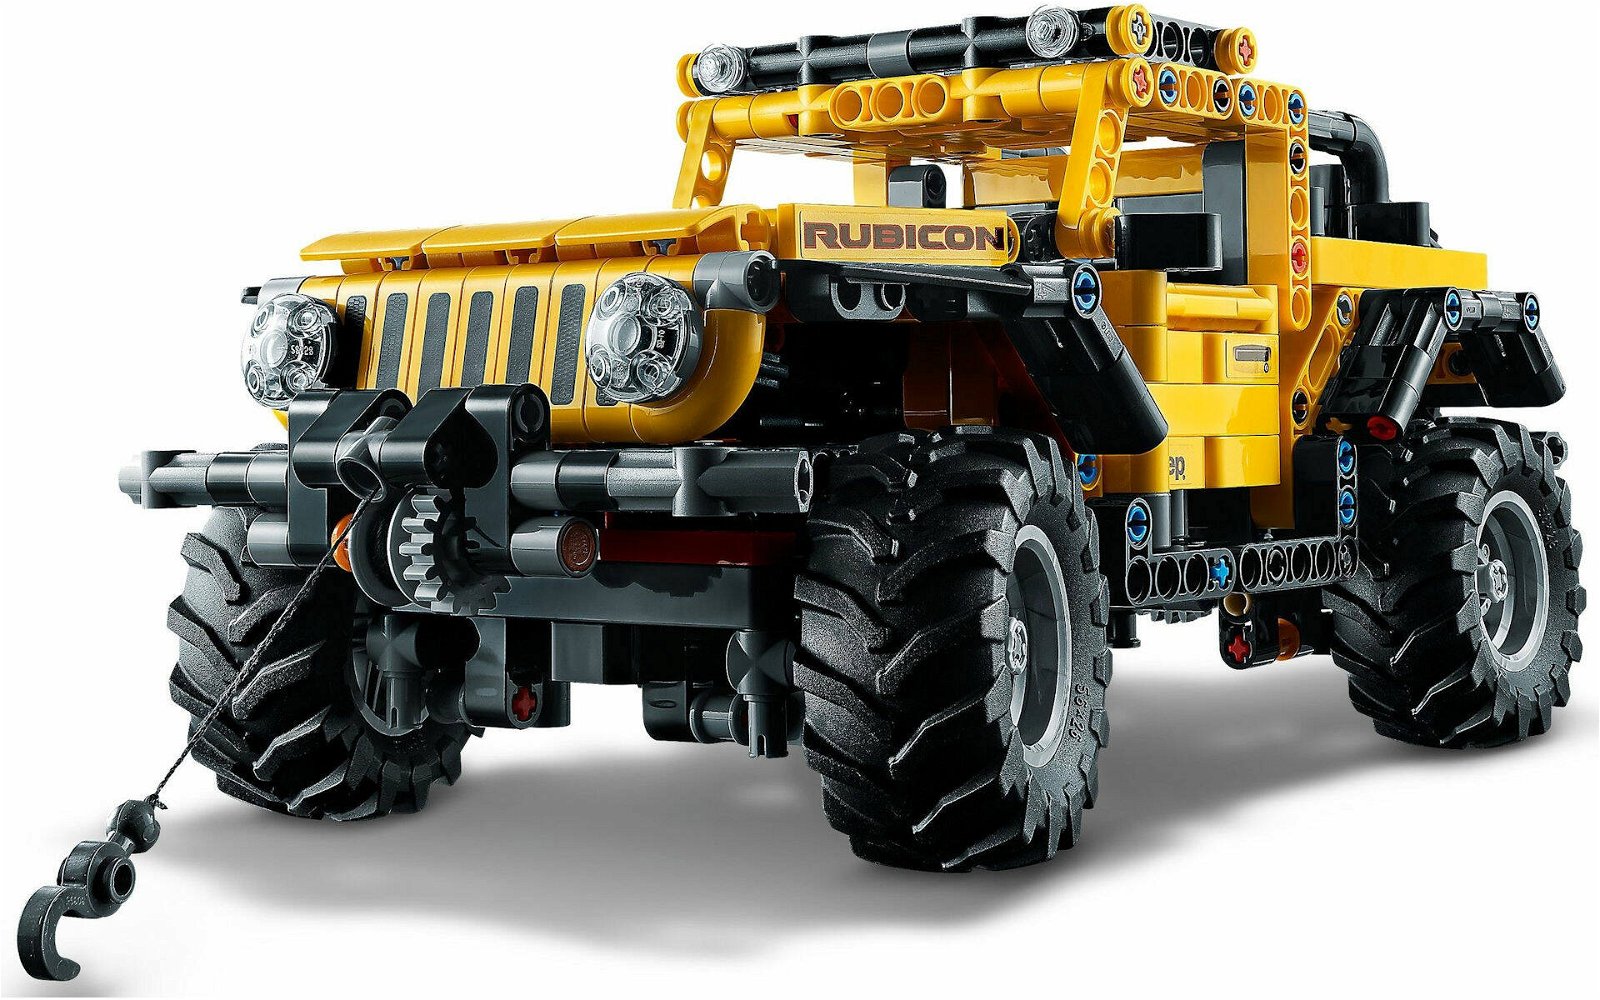 Immagine di LEGO MANIA. Costruiamo insieme il set #42122 Jeep Wrangler